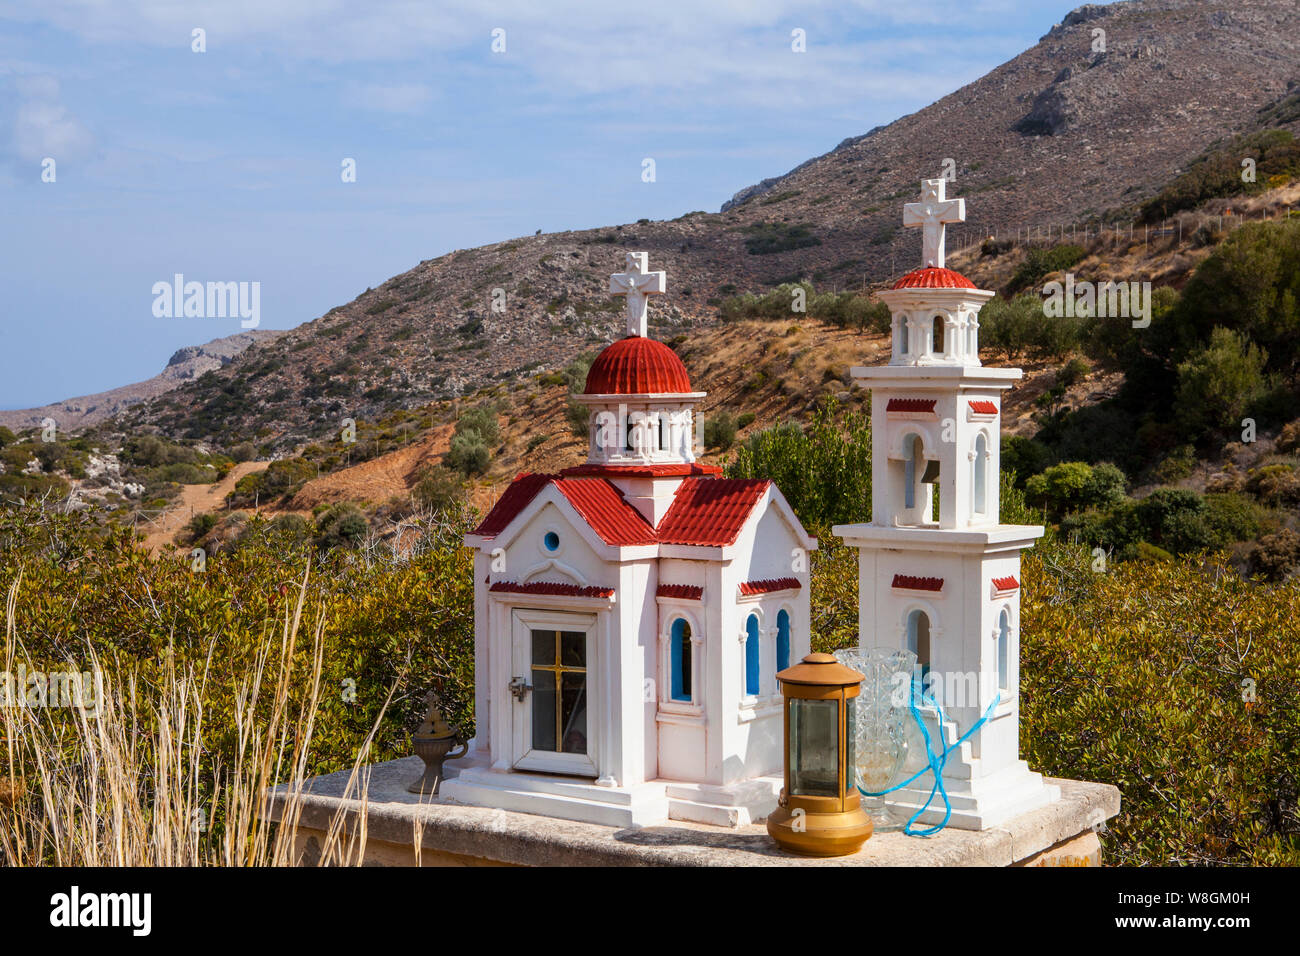 Typische griechische Miniatur Schrein am Straßenrand. Kleine Griechisch-orthodoxe Kapelle in Ost Kreta Stockfoto